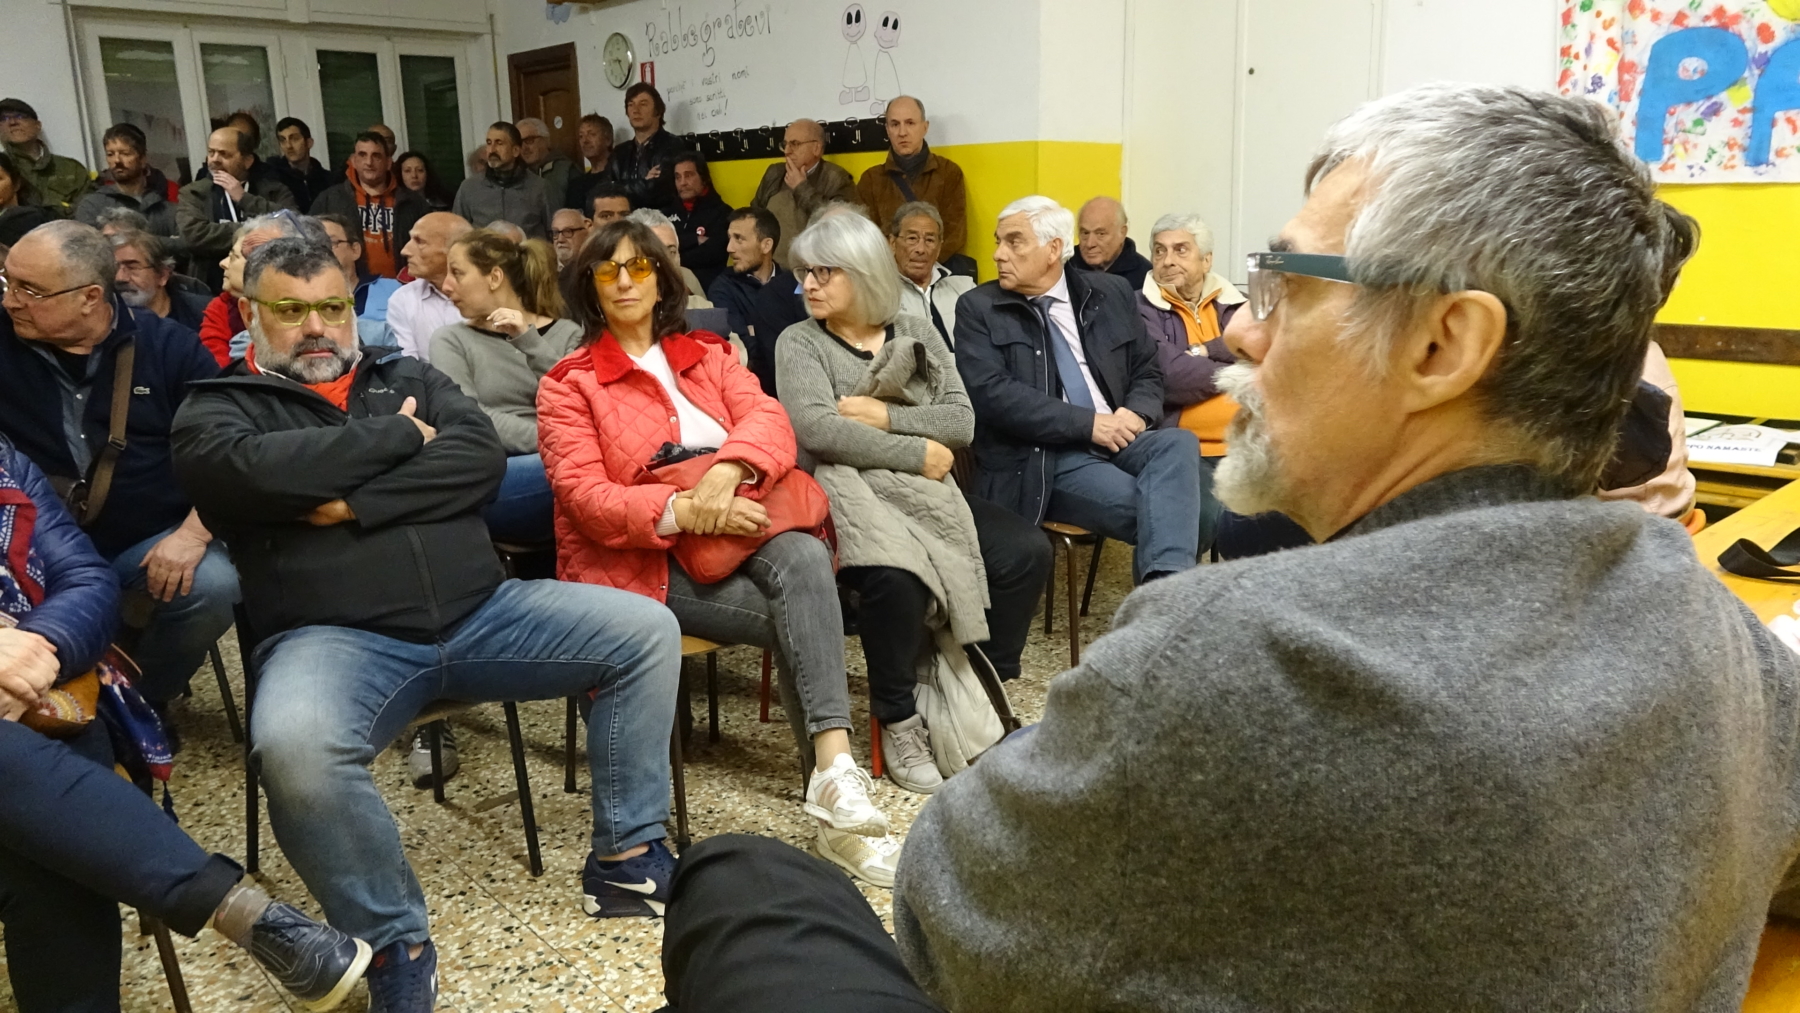 Migranti a Struppa, Don Martino: "Volete le telecamere? Farò una pernacchia..."